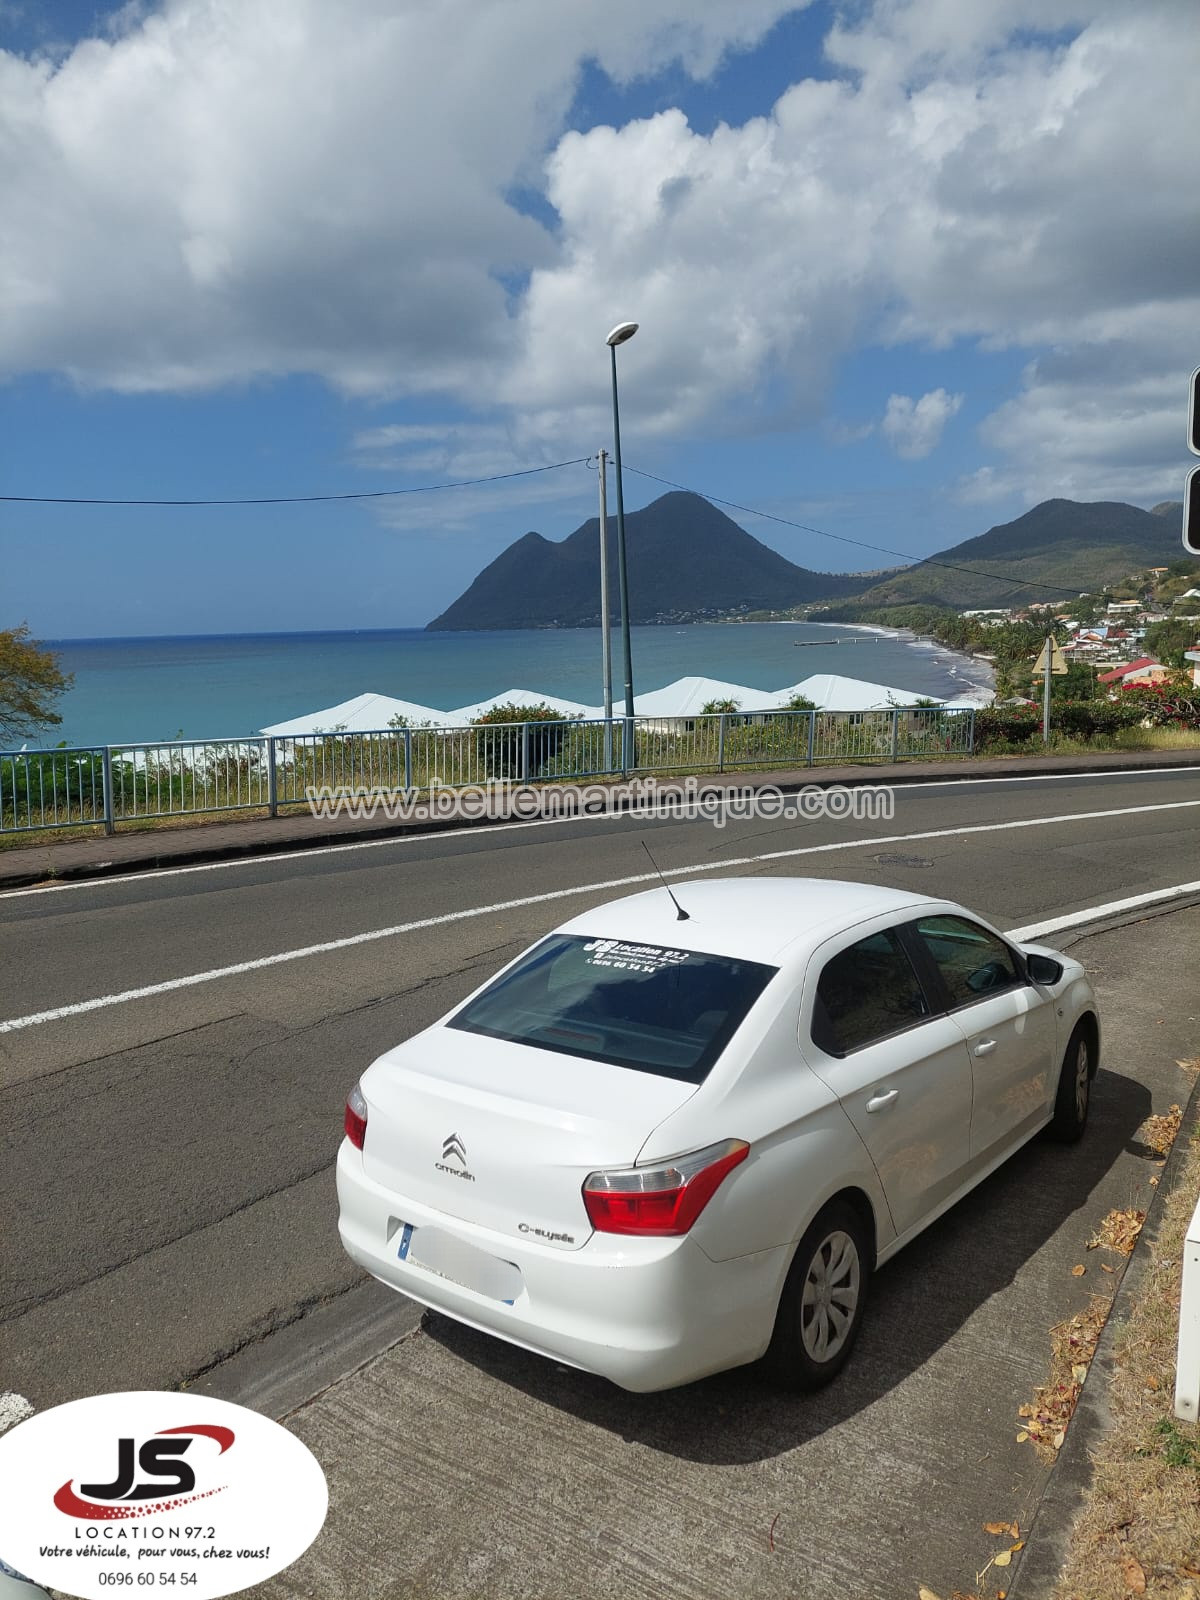 Citroën JS LOCATION 97.2-Location de voiture-Martinique-Caraïbes